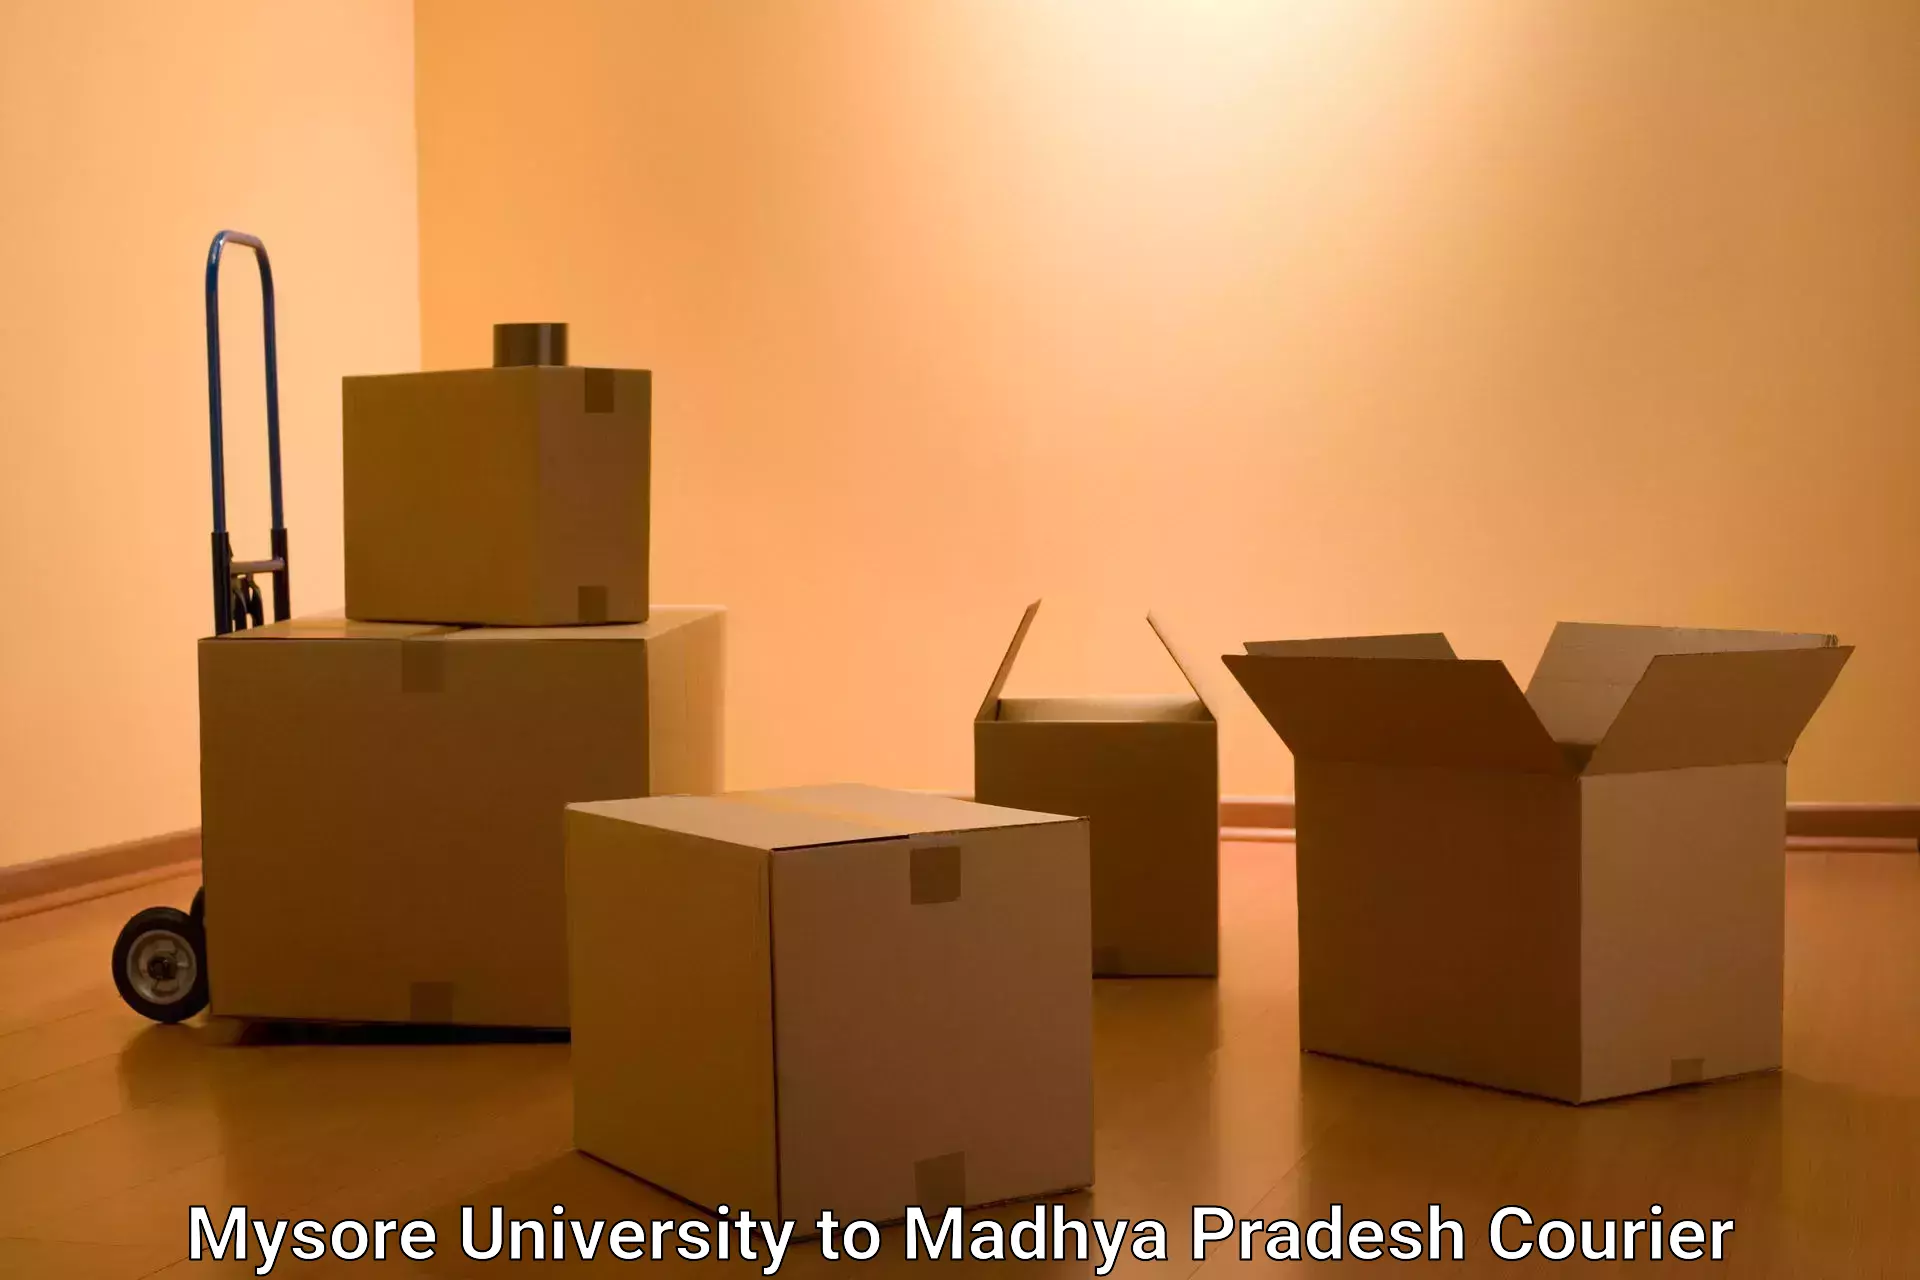 Express mail service Mysore University to Nalkheda